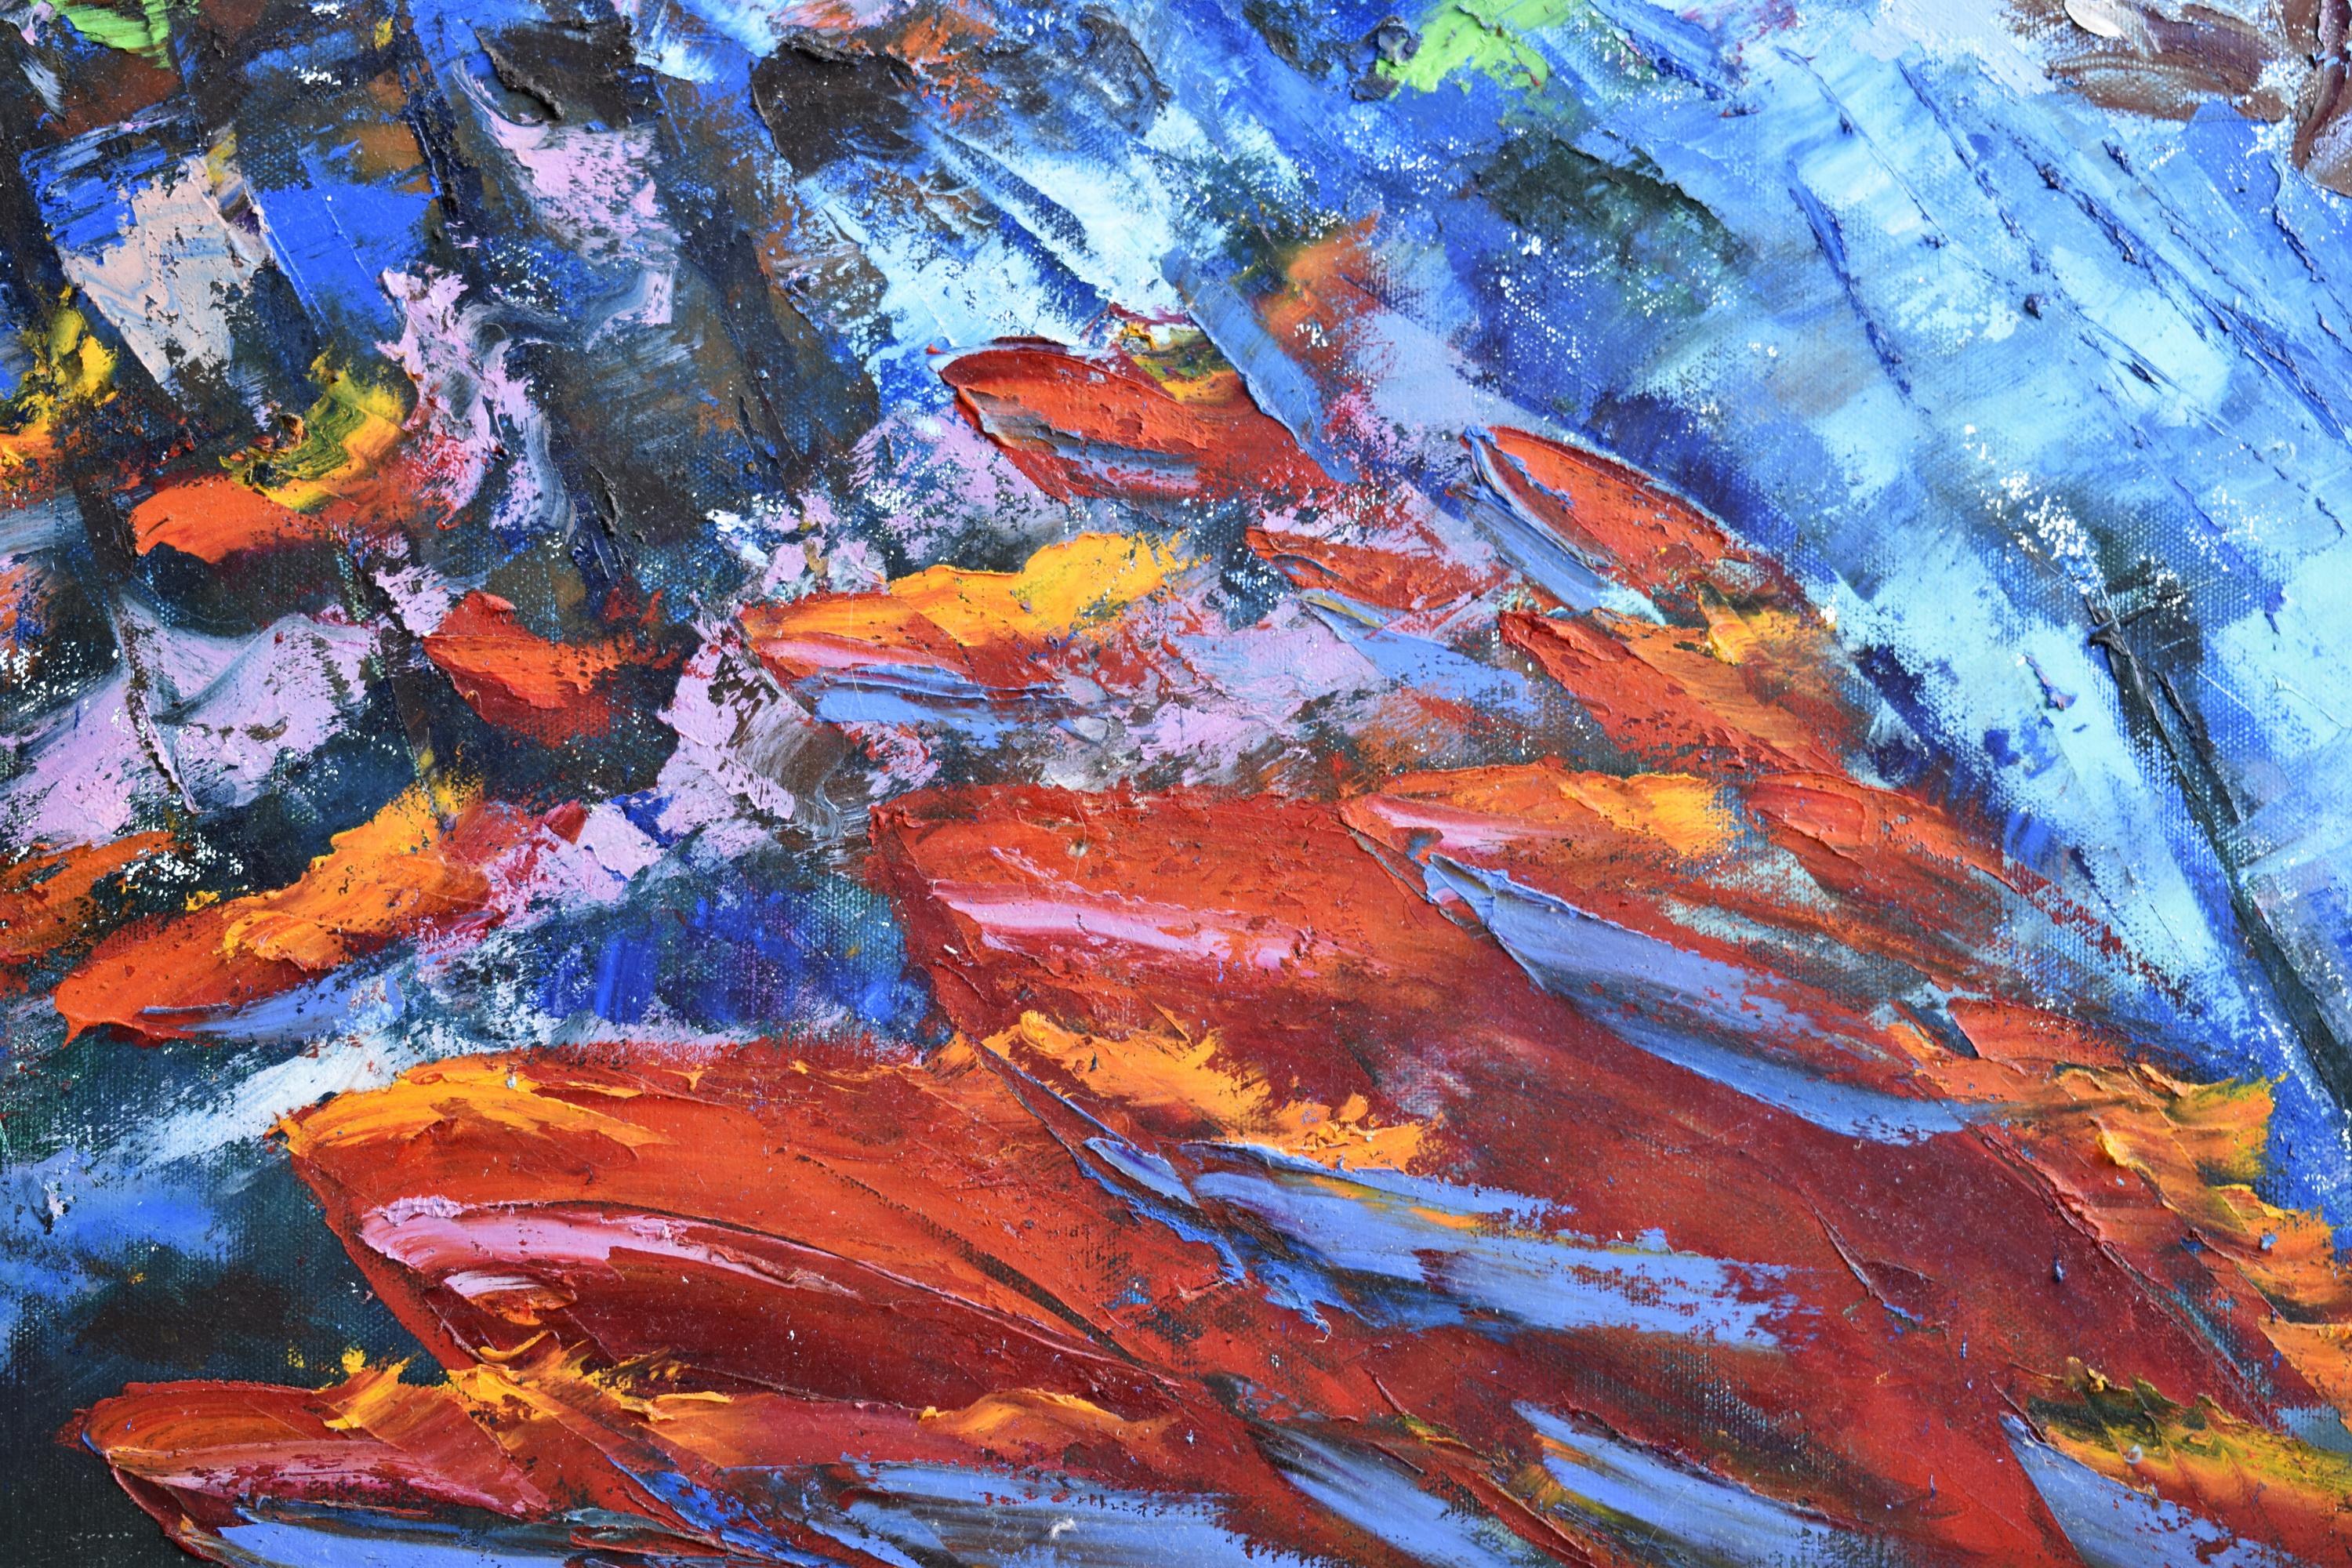 Unterwasser-Malerei von OlgaNikitinArt, Projekt 7 Tage unter Wasser. Das größte Kunstwerk von Olga Nikitina, das unter Wasser beim Tauchen entstanden ist, 120x80cm. Das Kunstwerk spiegelt die Geschichte von 7 Safaritagen im Roten Meer auf der